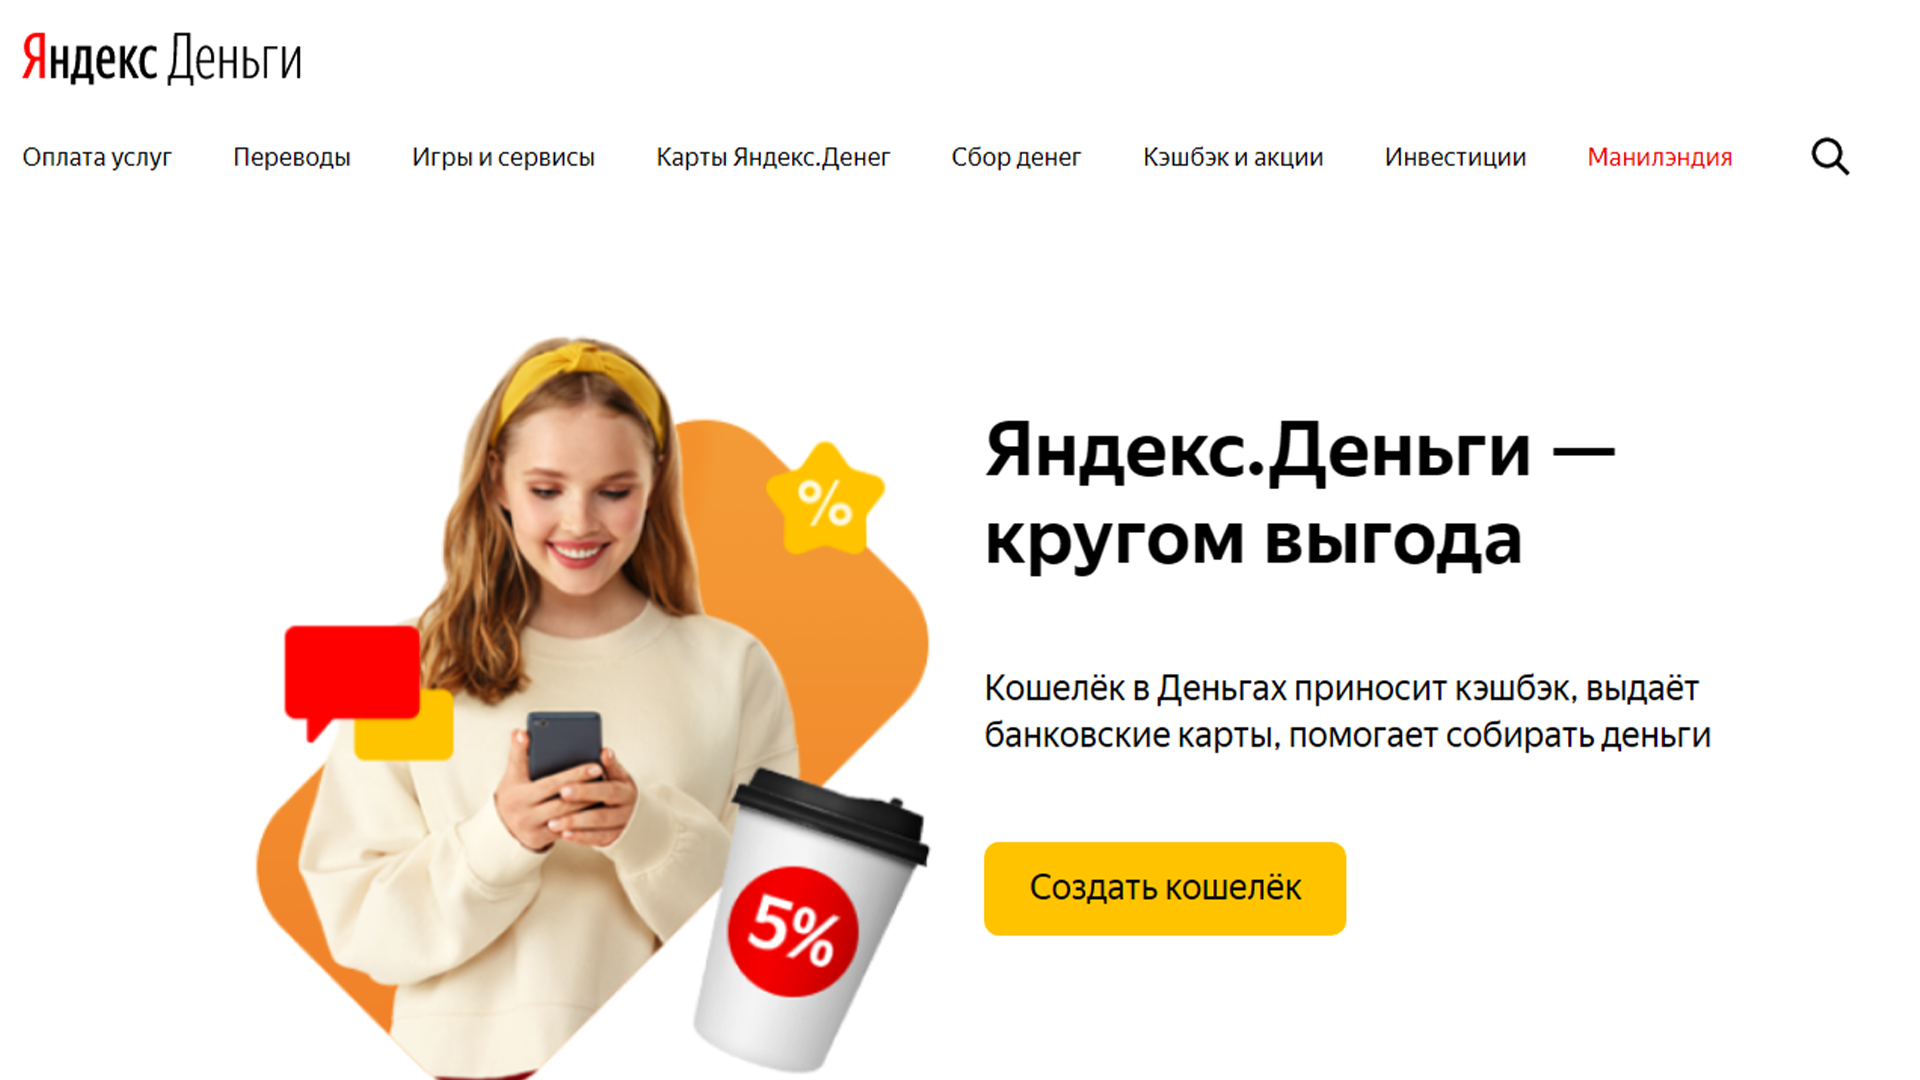 Оплата услуг Яндекс картой